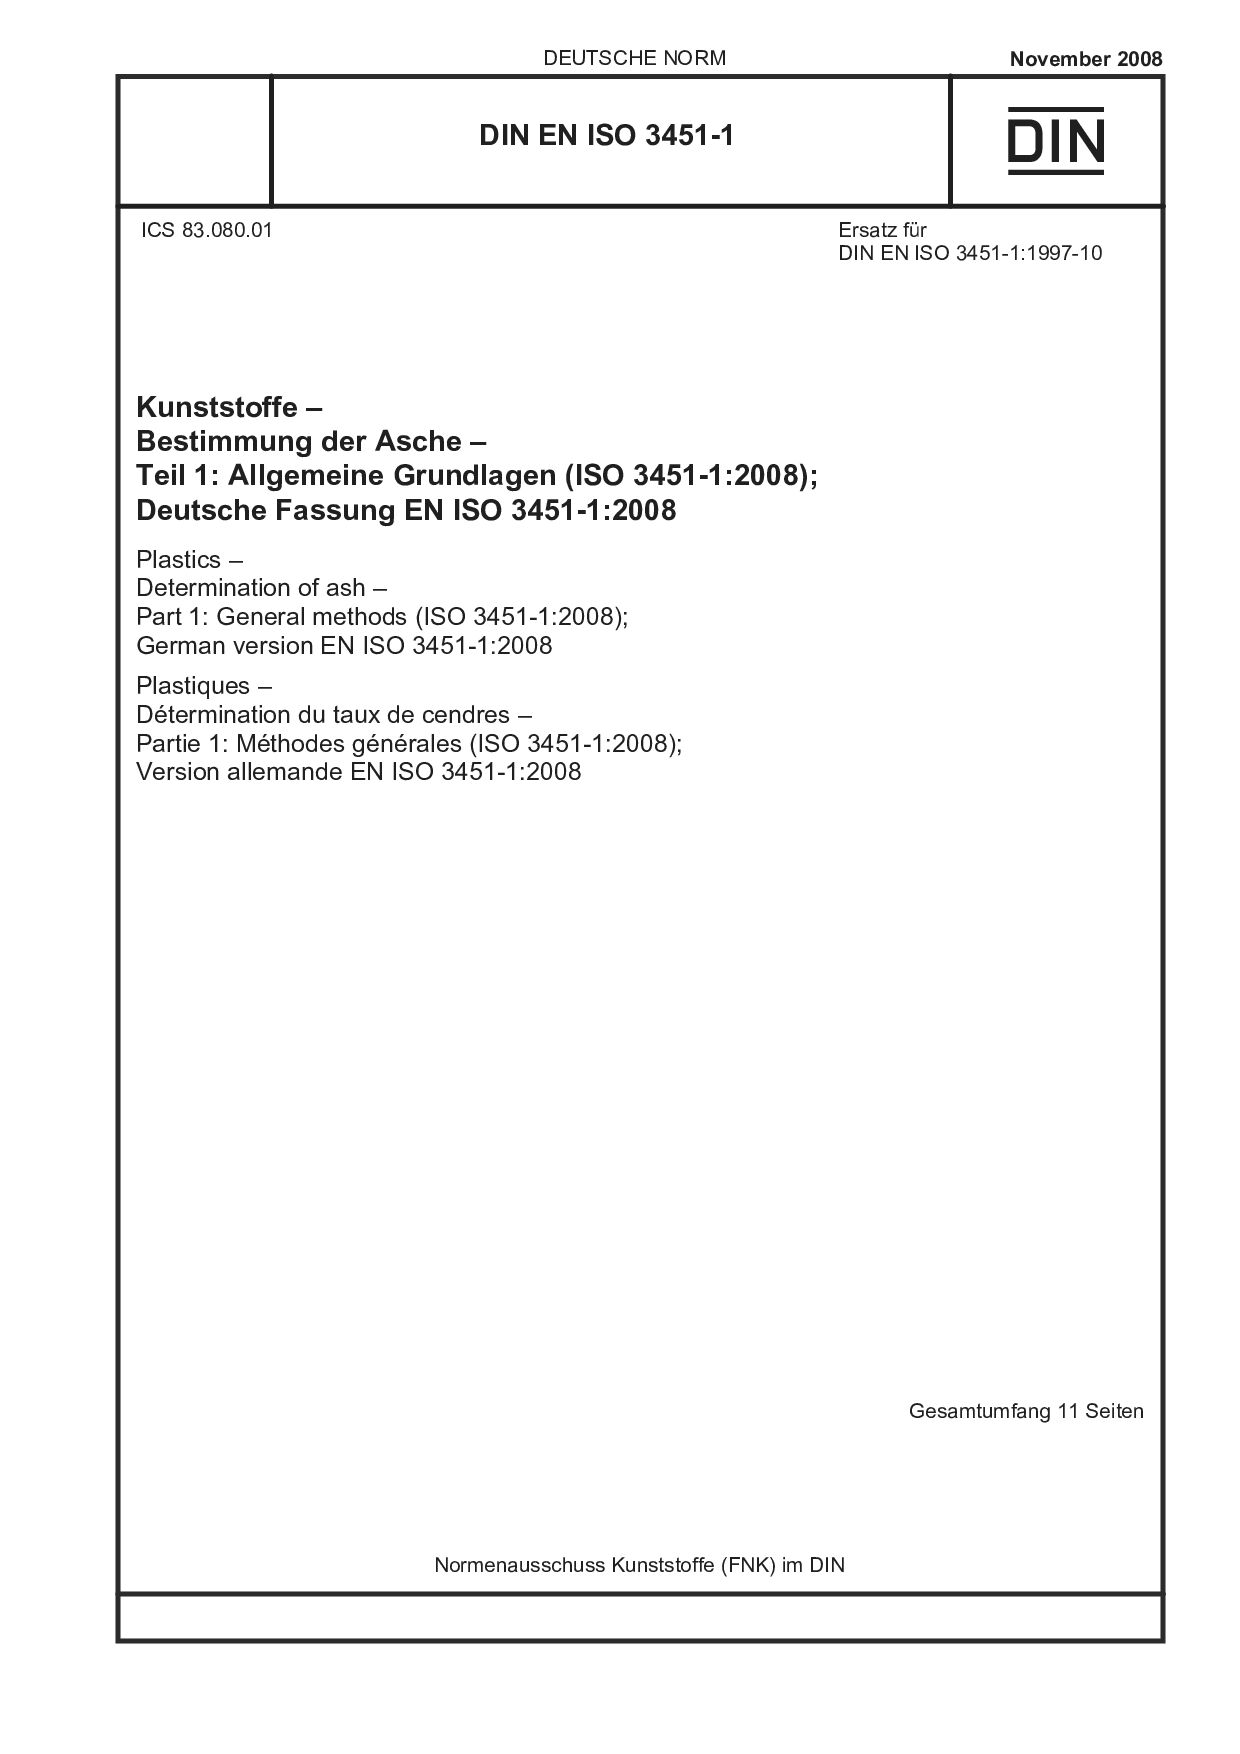 DIN EN ISO 3451-1:2008